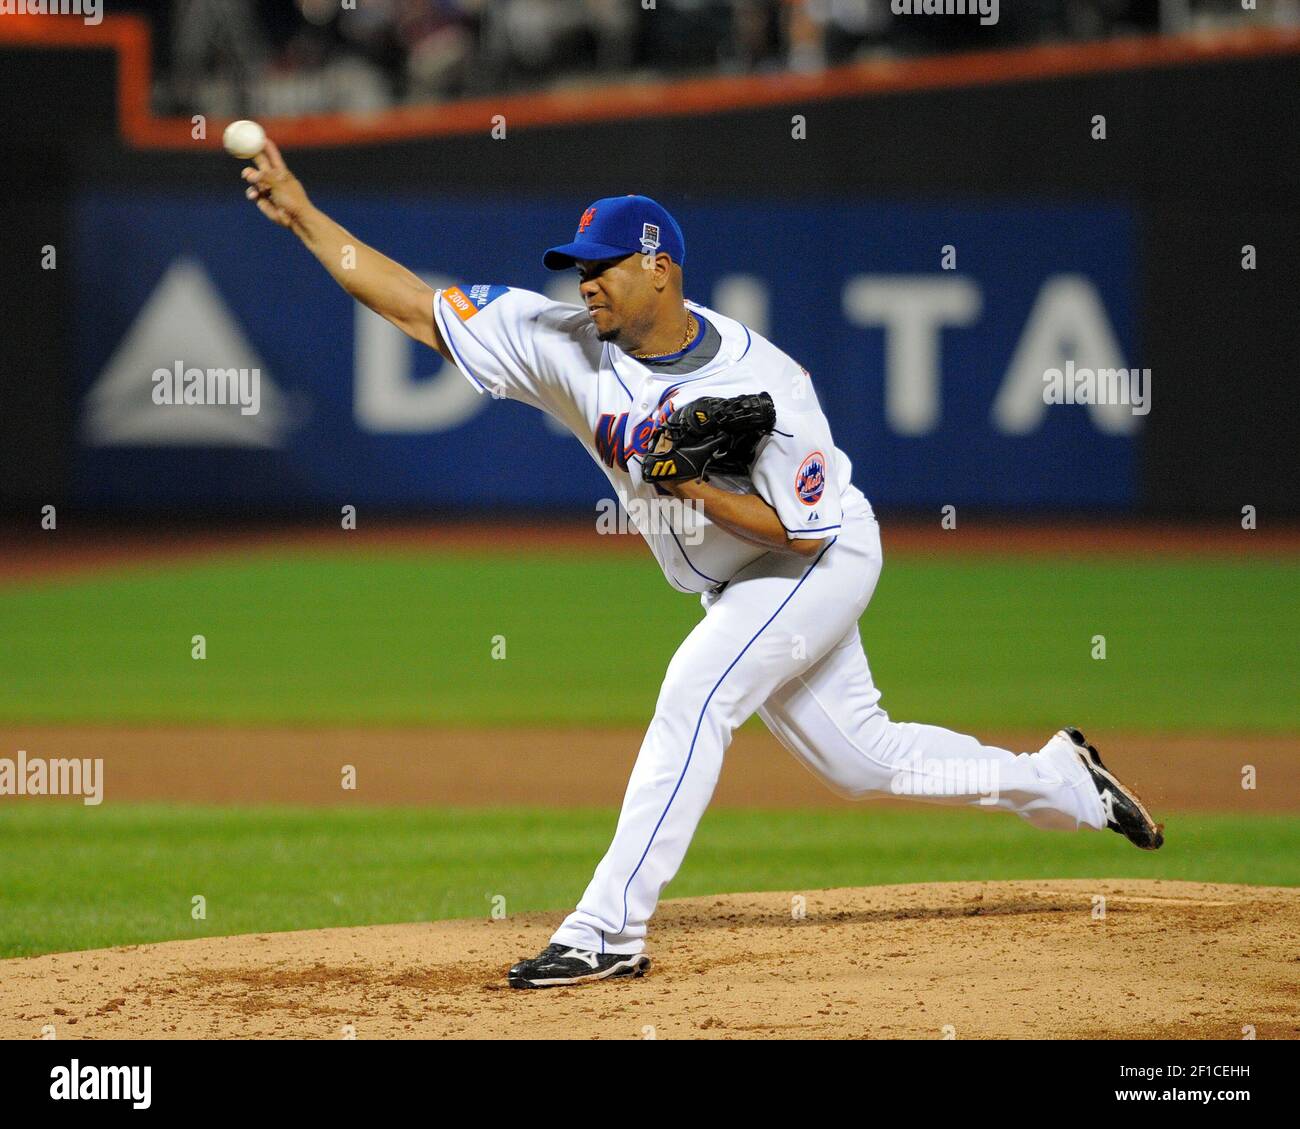 One Time New York Mets Pitcher: Livan Hernandez (2009)